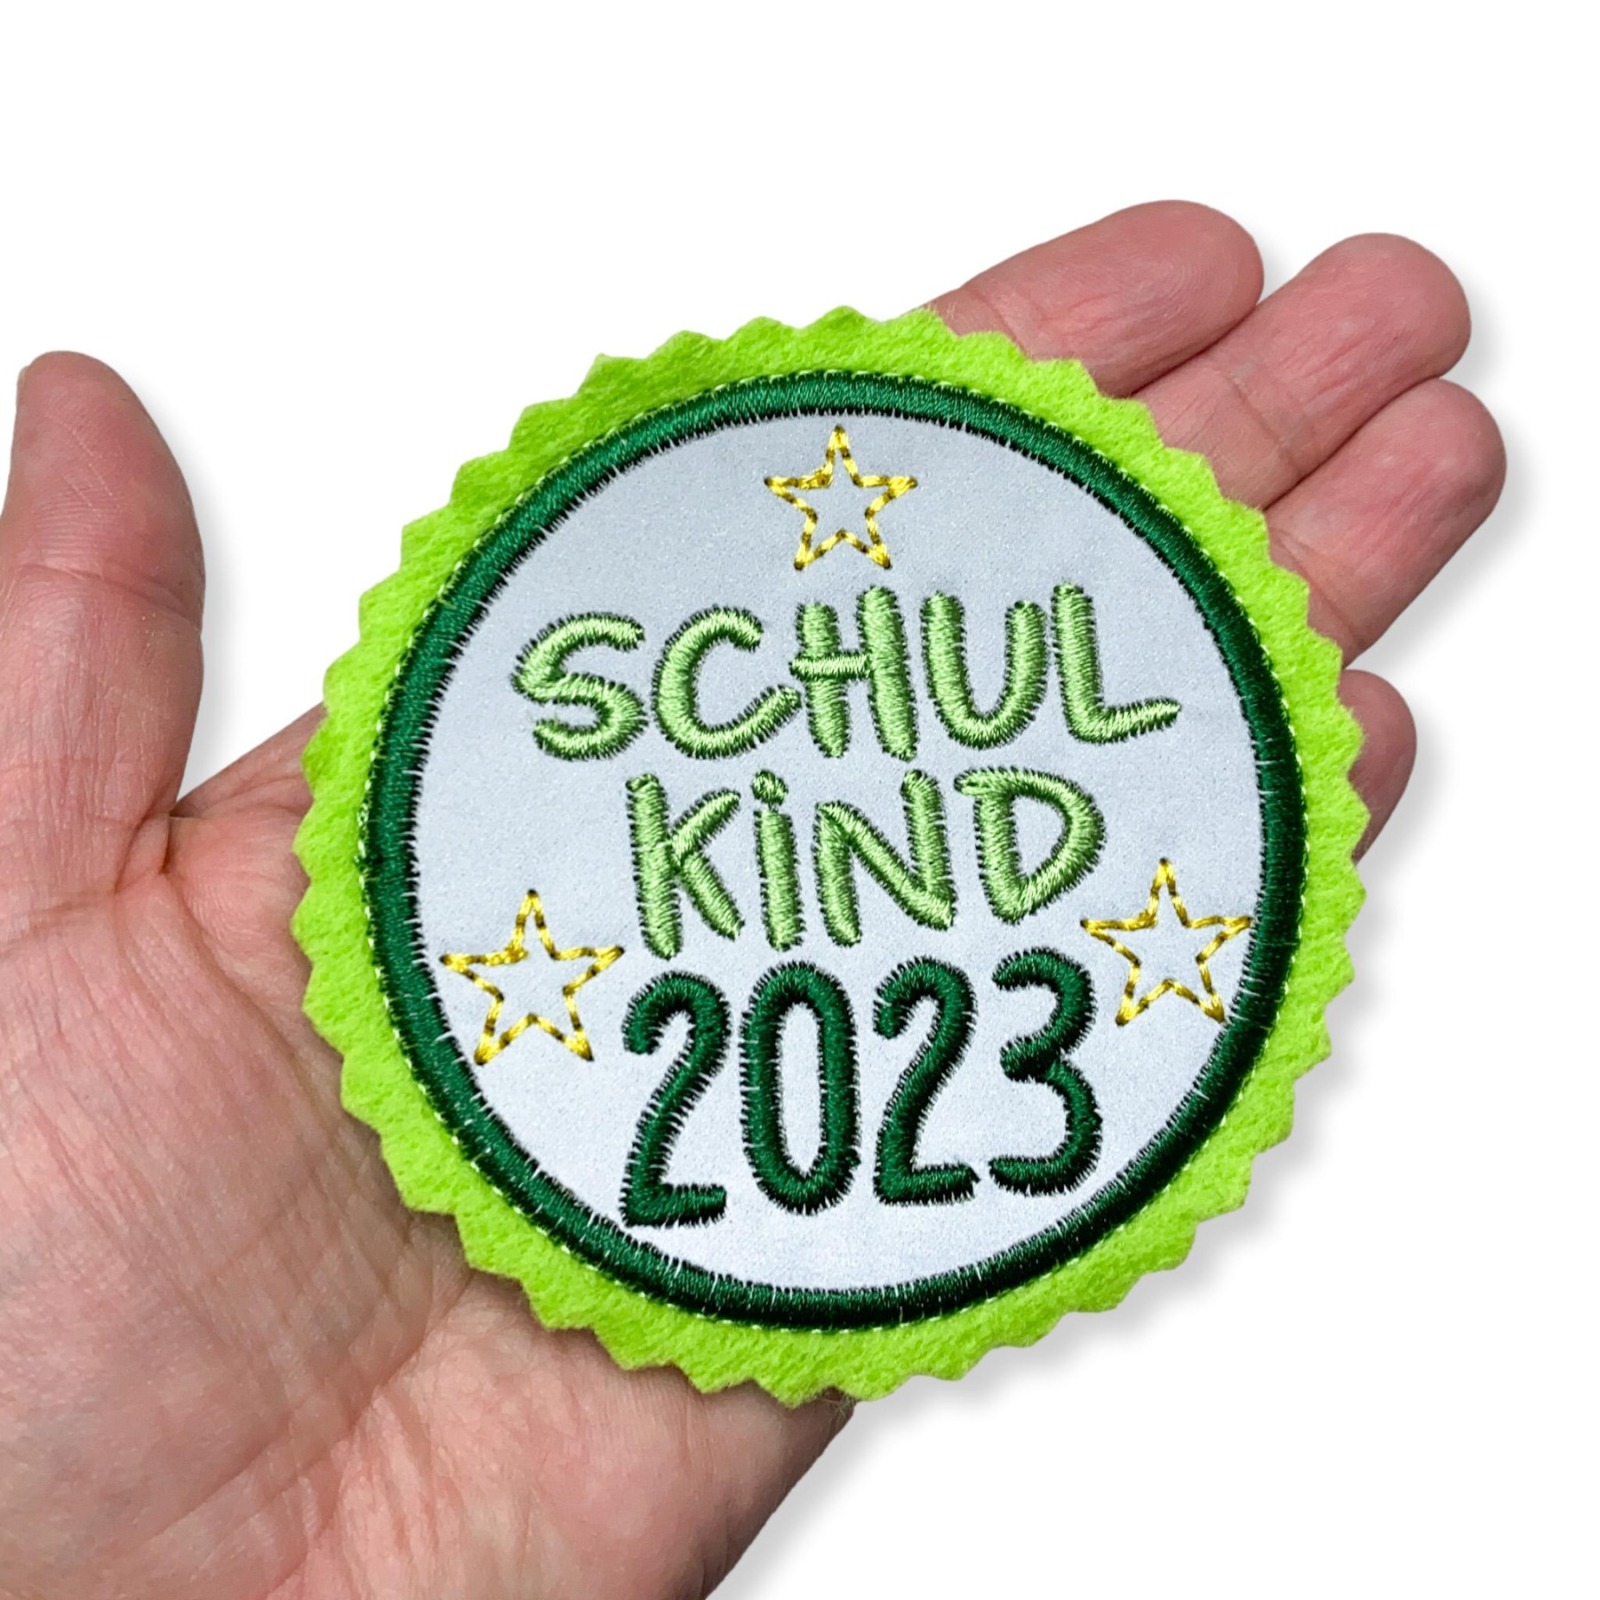 Klettie Schulkind 2024, 8cm Durchmesser, Reflektor, hellgrün, dunkelgrün, Einschulung Schulranzen